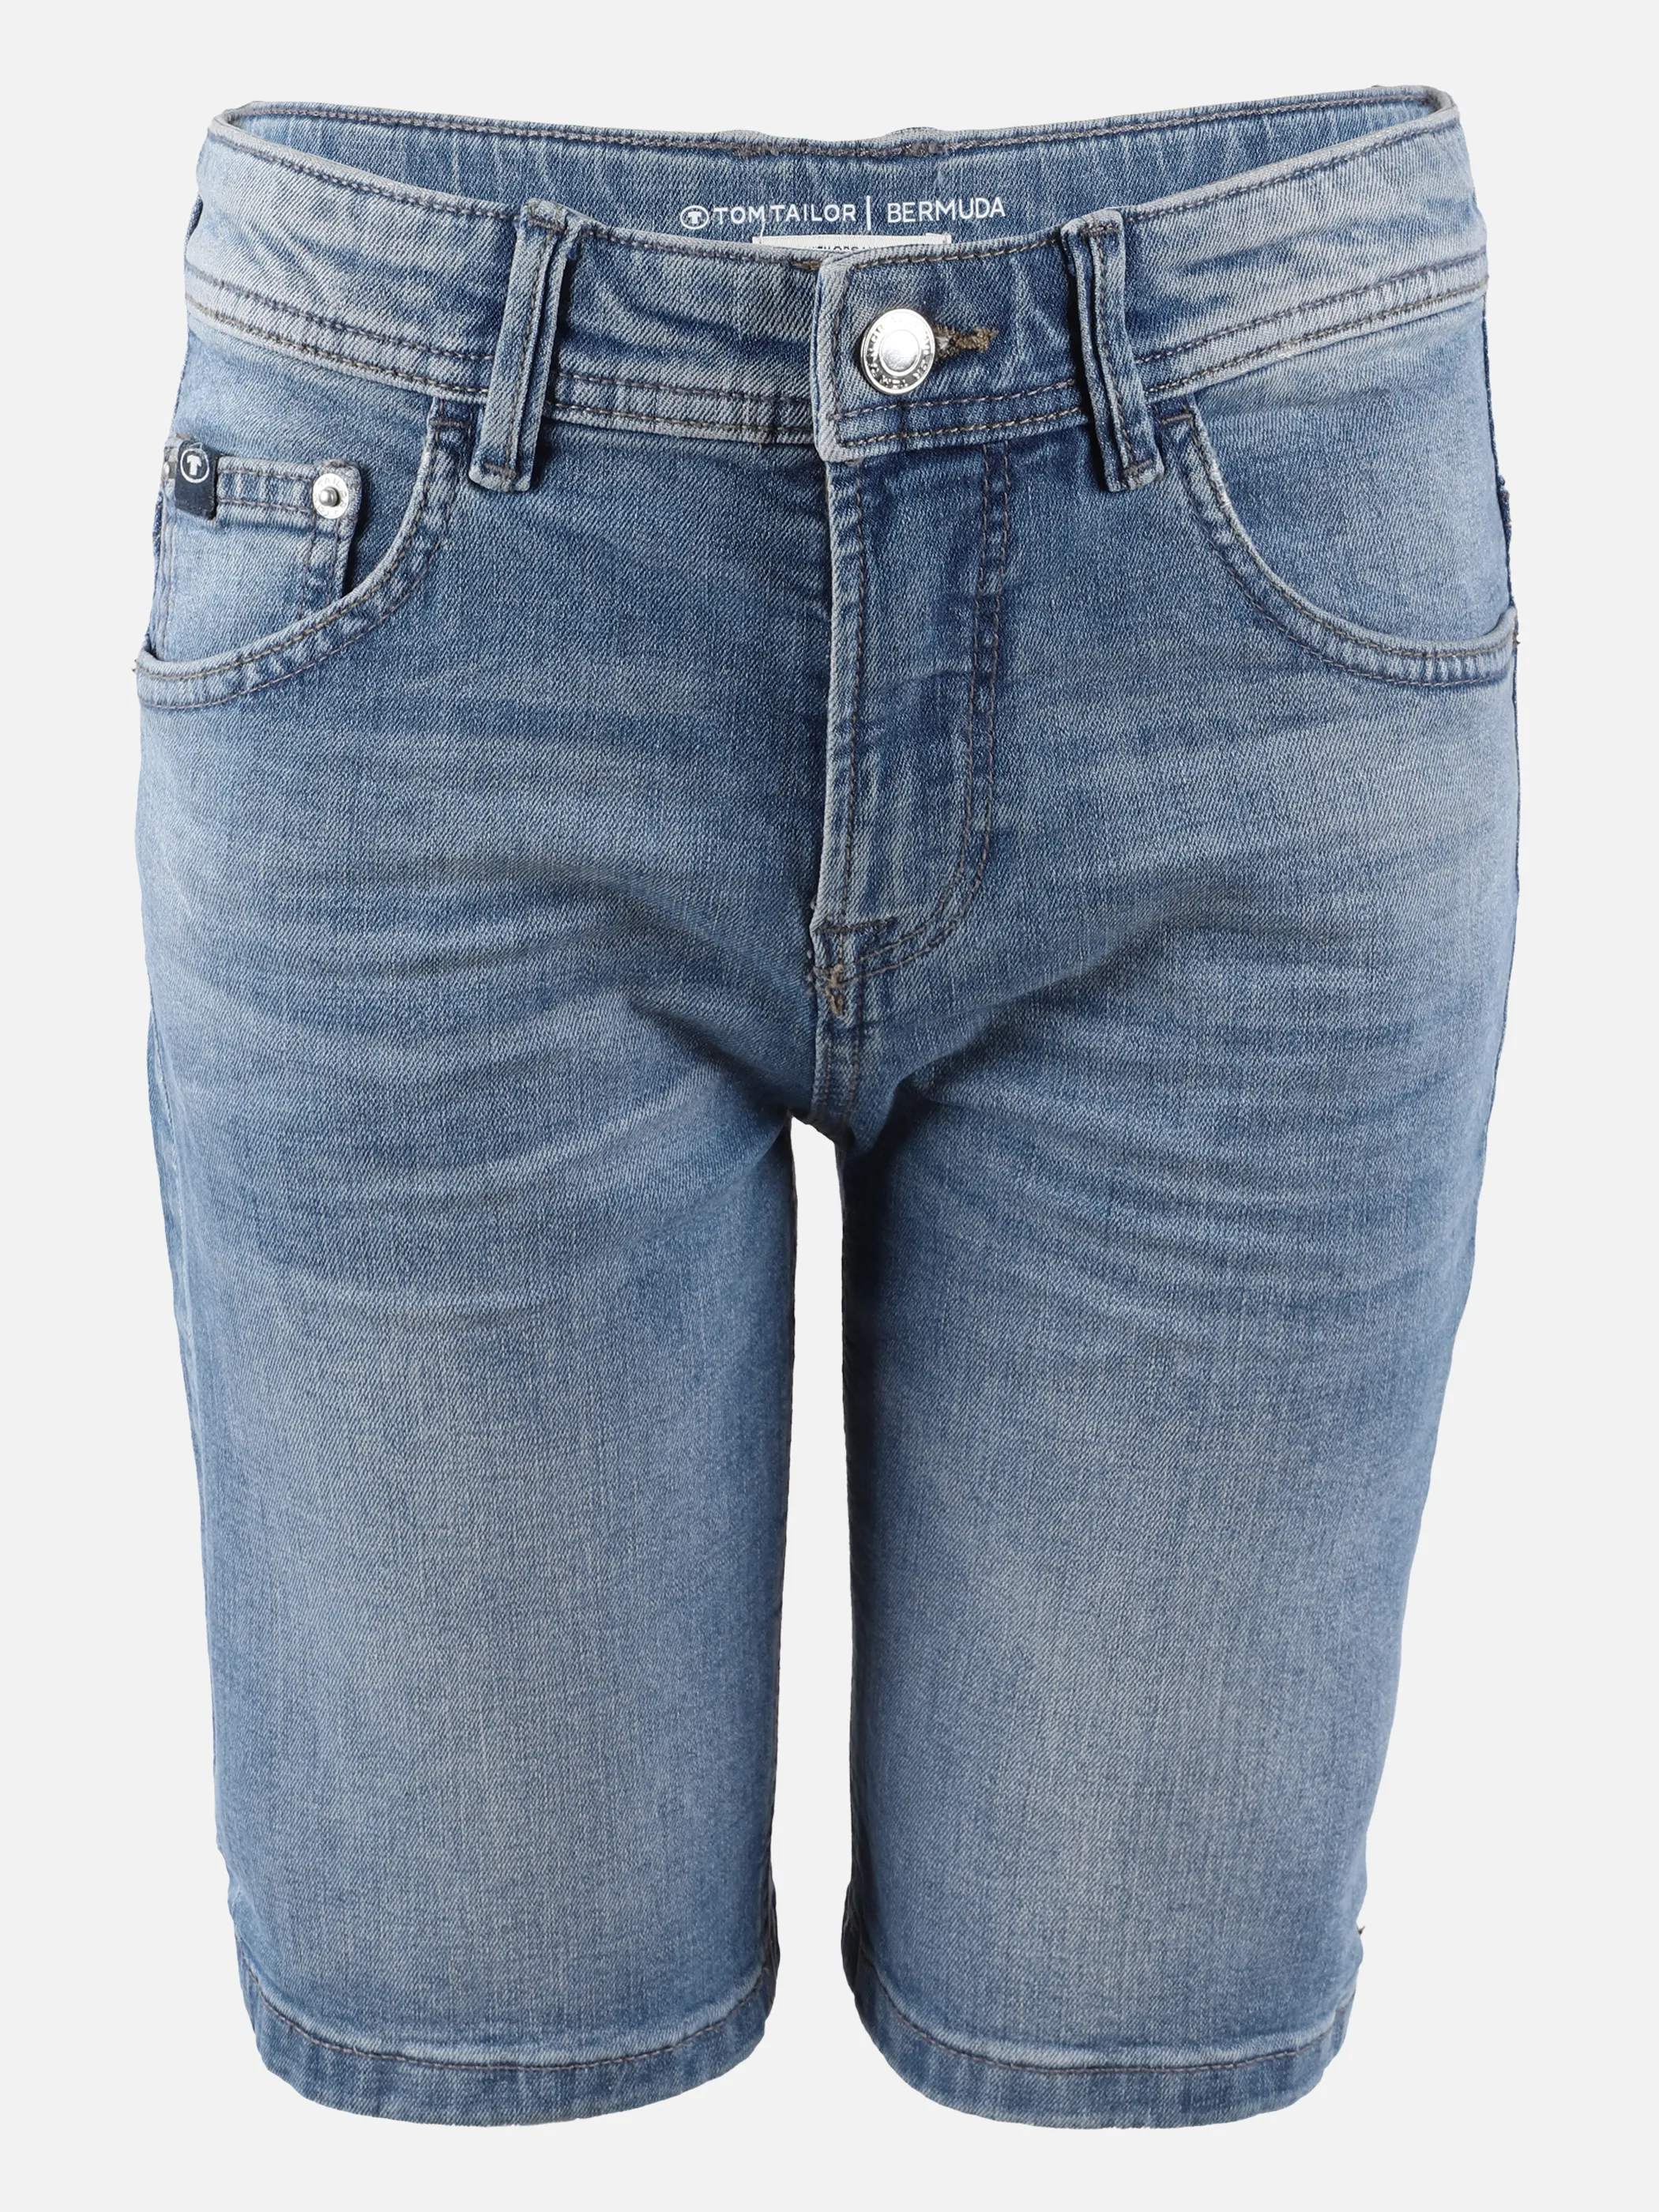 Kinder Jeans Shorts | 10118 | noSize | 865839-010118